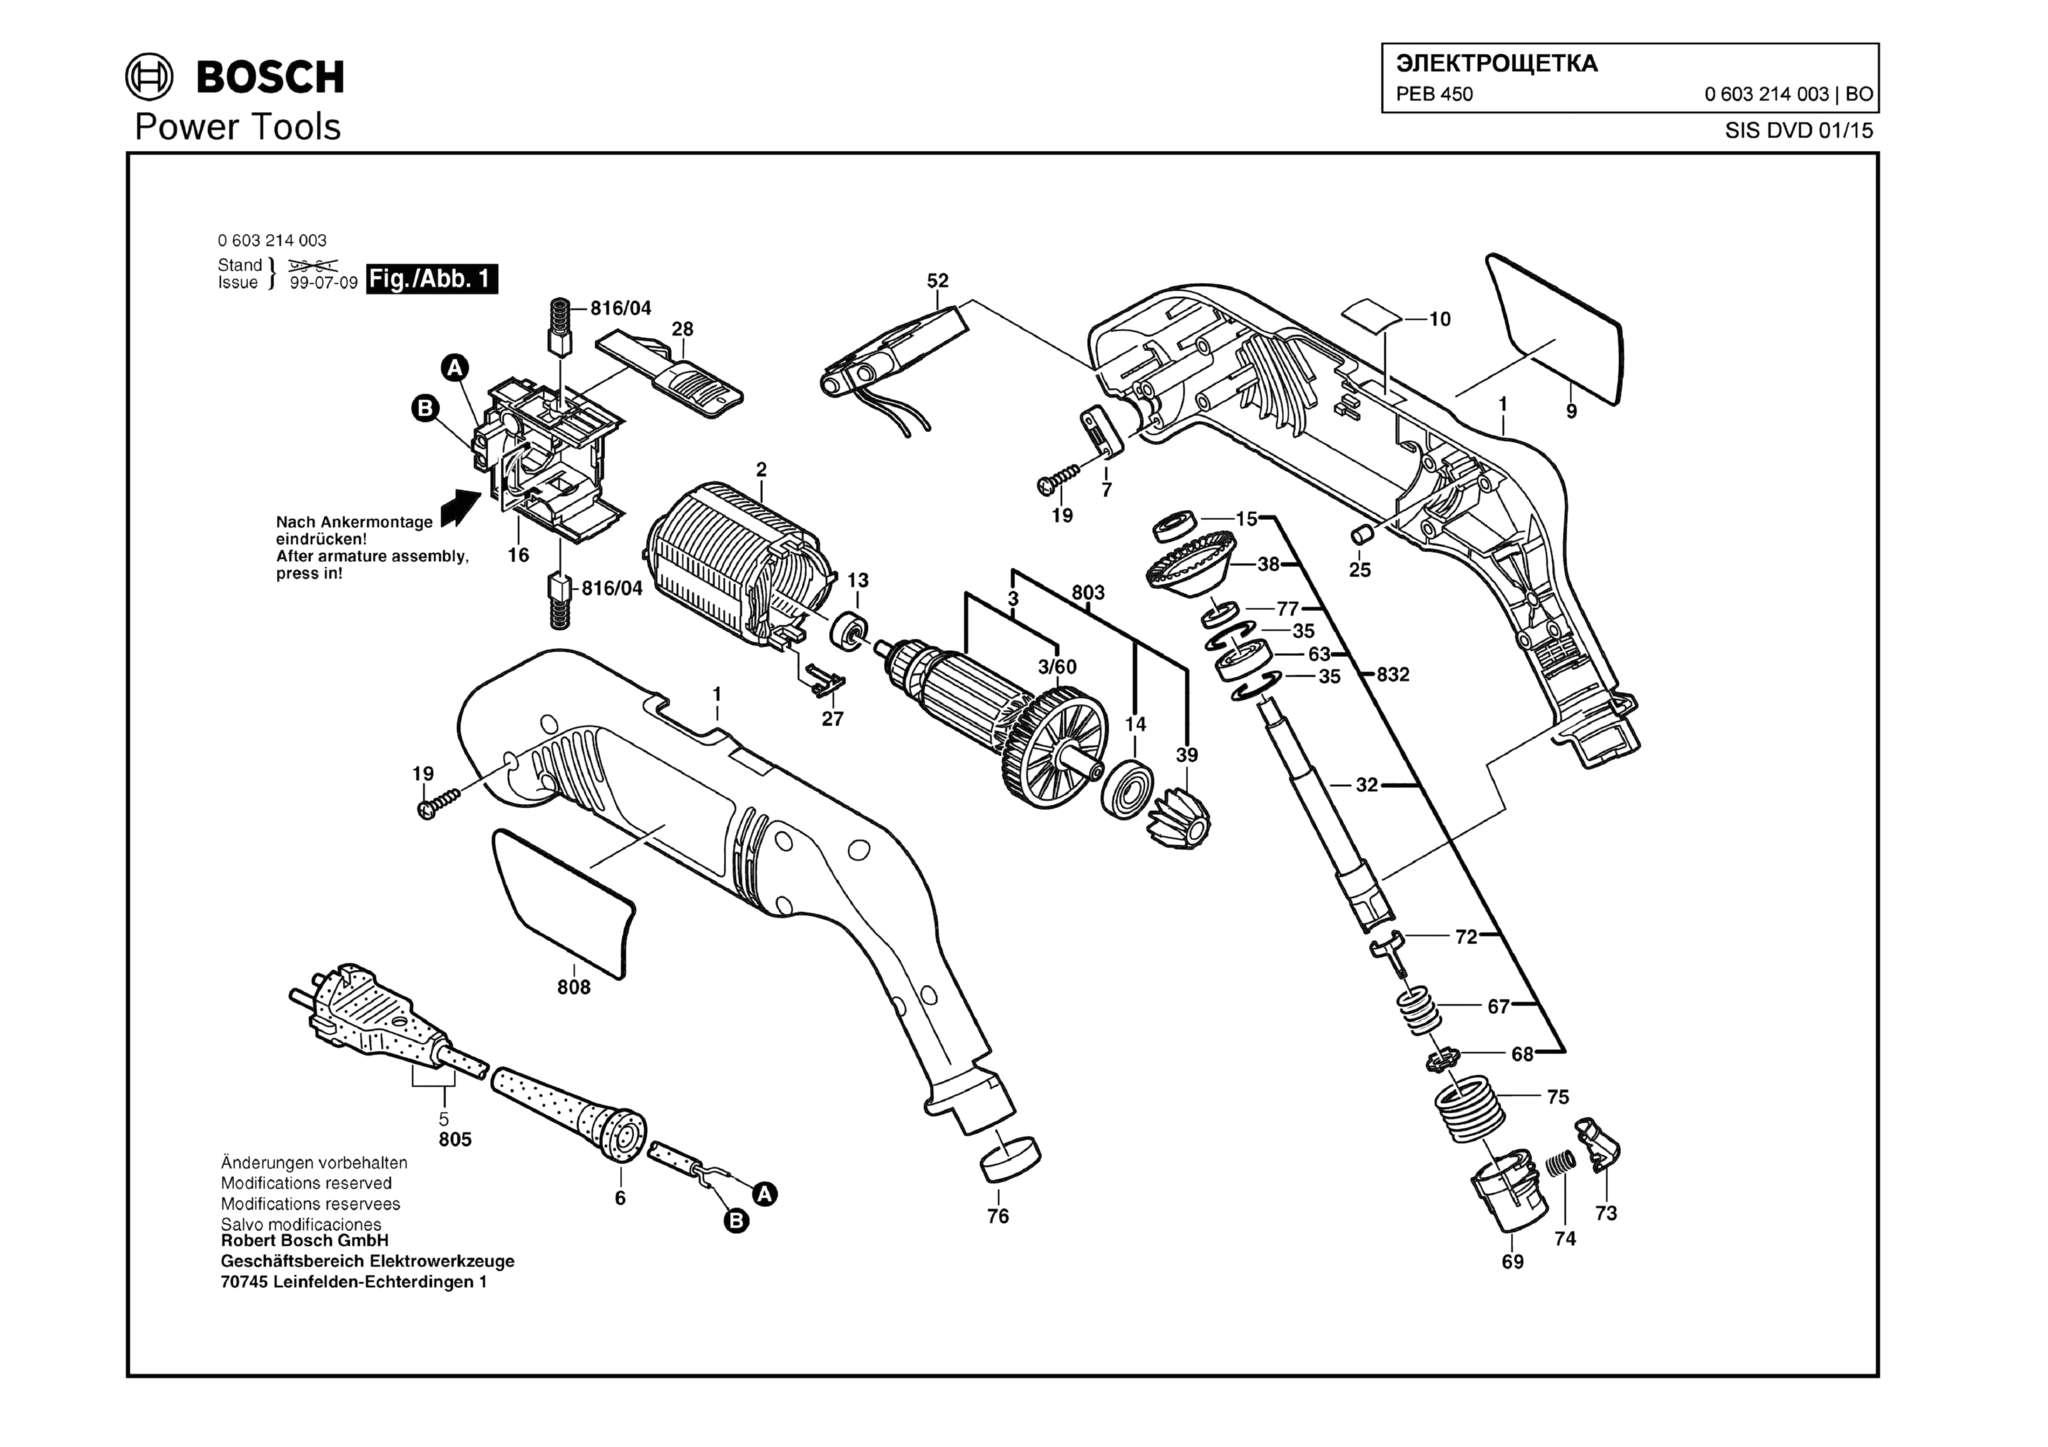 Запчасти, схема и деталировка Bosch PEB 450 (ТИП 0603214003)